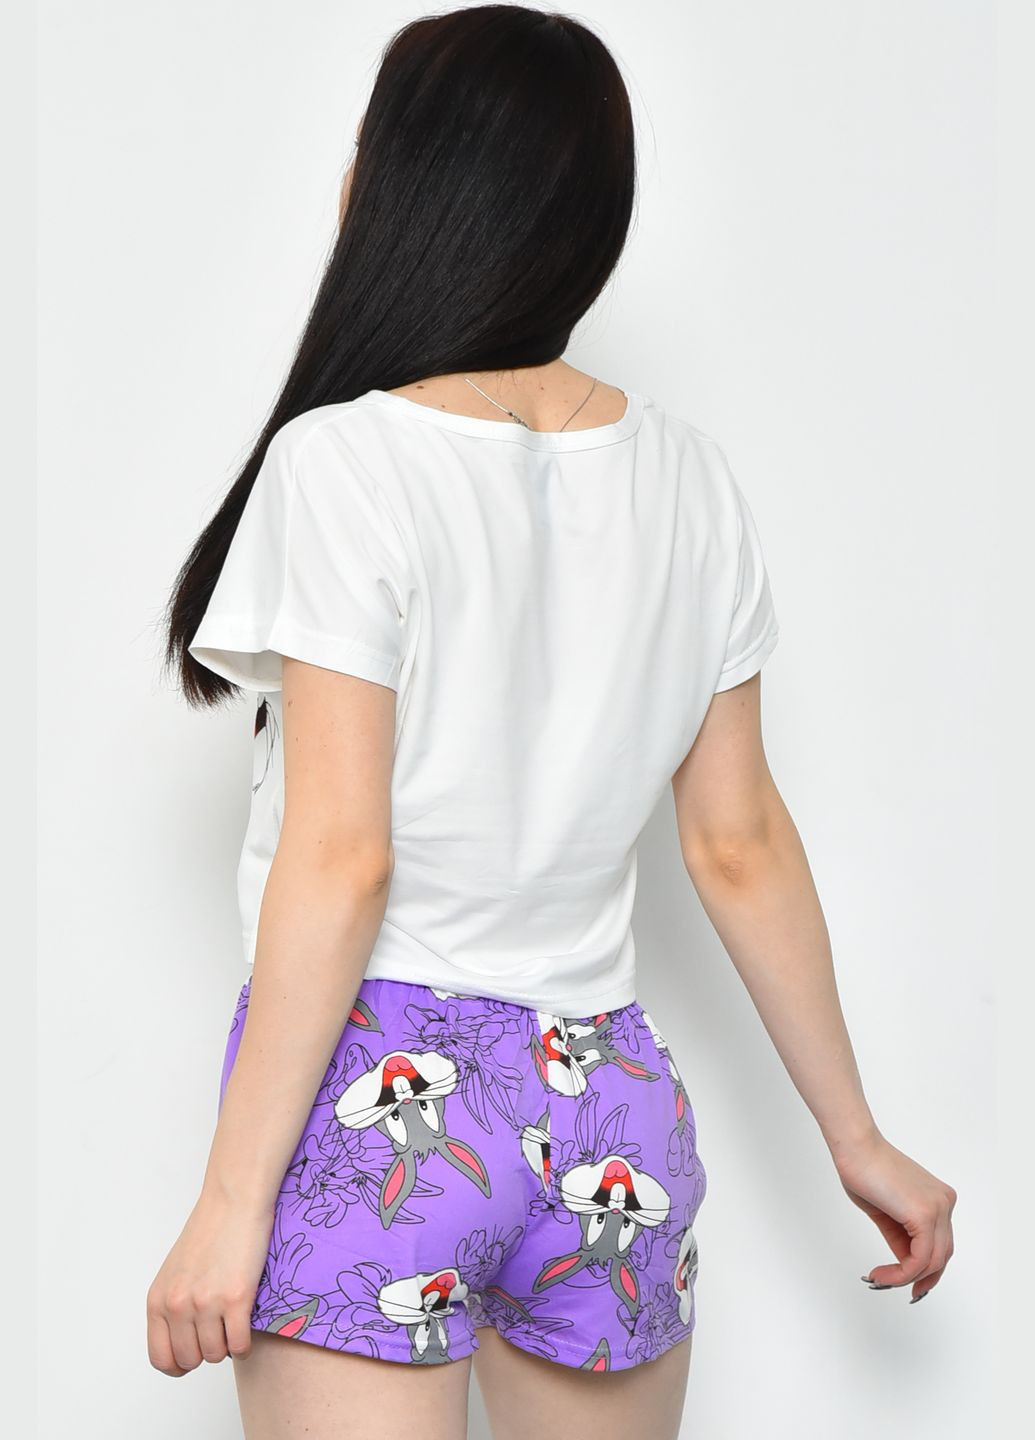 Белая всесезон пижама женская летняя шорты+футболка бело-фиолетового цвета футболка + шорты Let's Shop